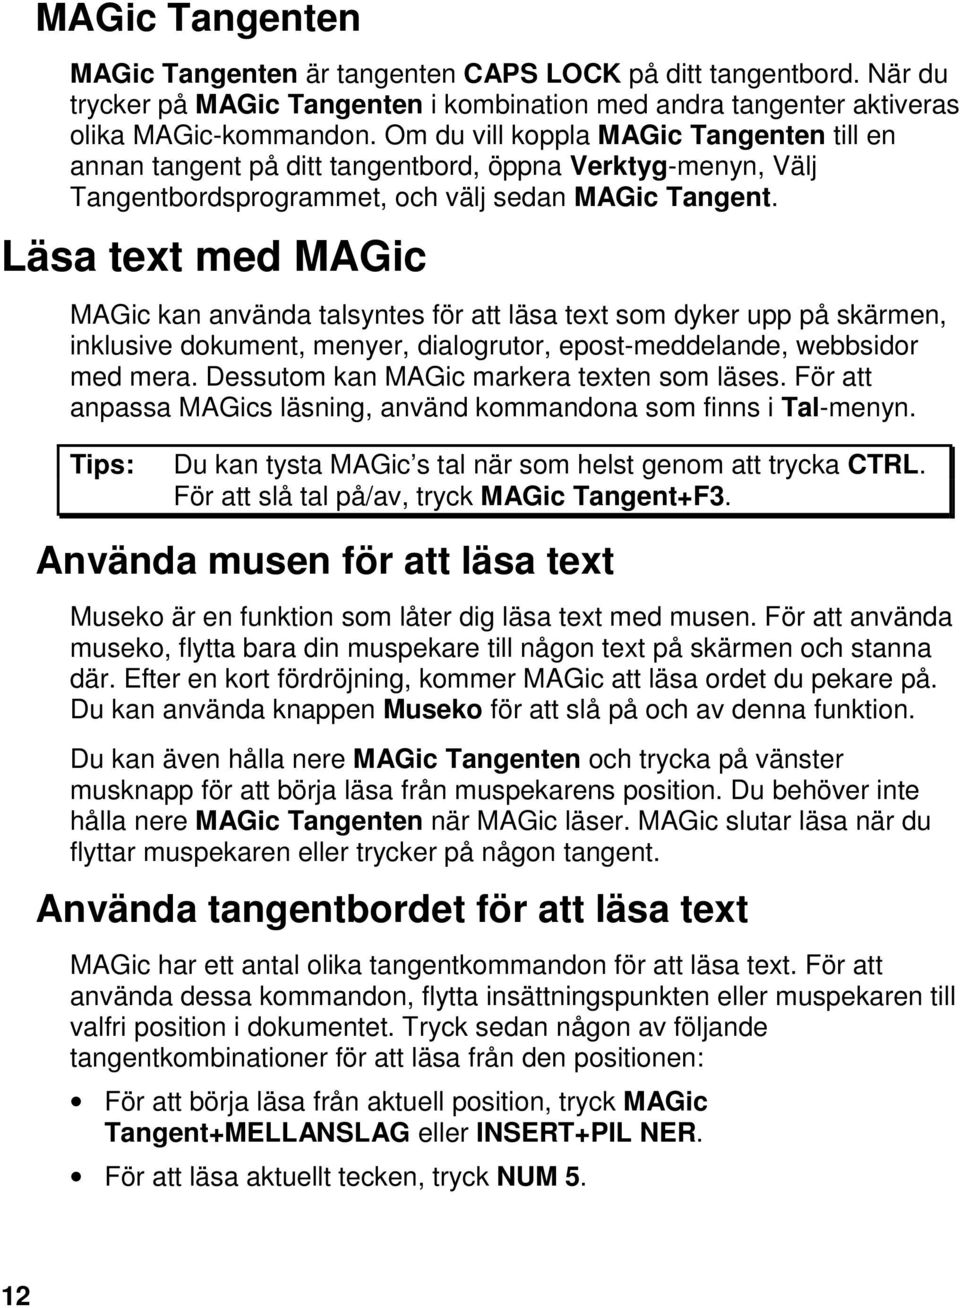 Läsa text med MAGic MAGic kan använda talsyntes för att läsa text som dyker upp på skärmen, inklusive dokument, menyer, dialogrutor, epost-meddelande, webbsidor med mera.